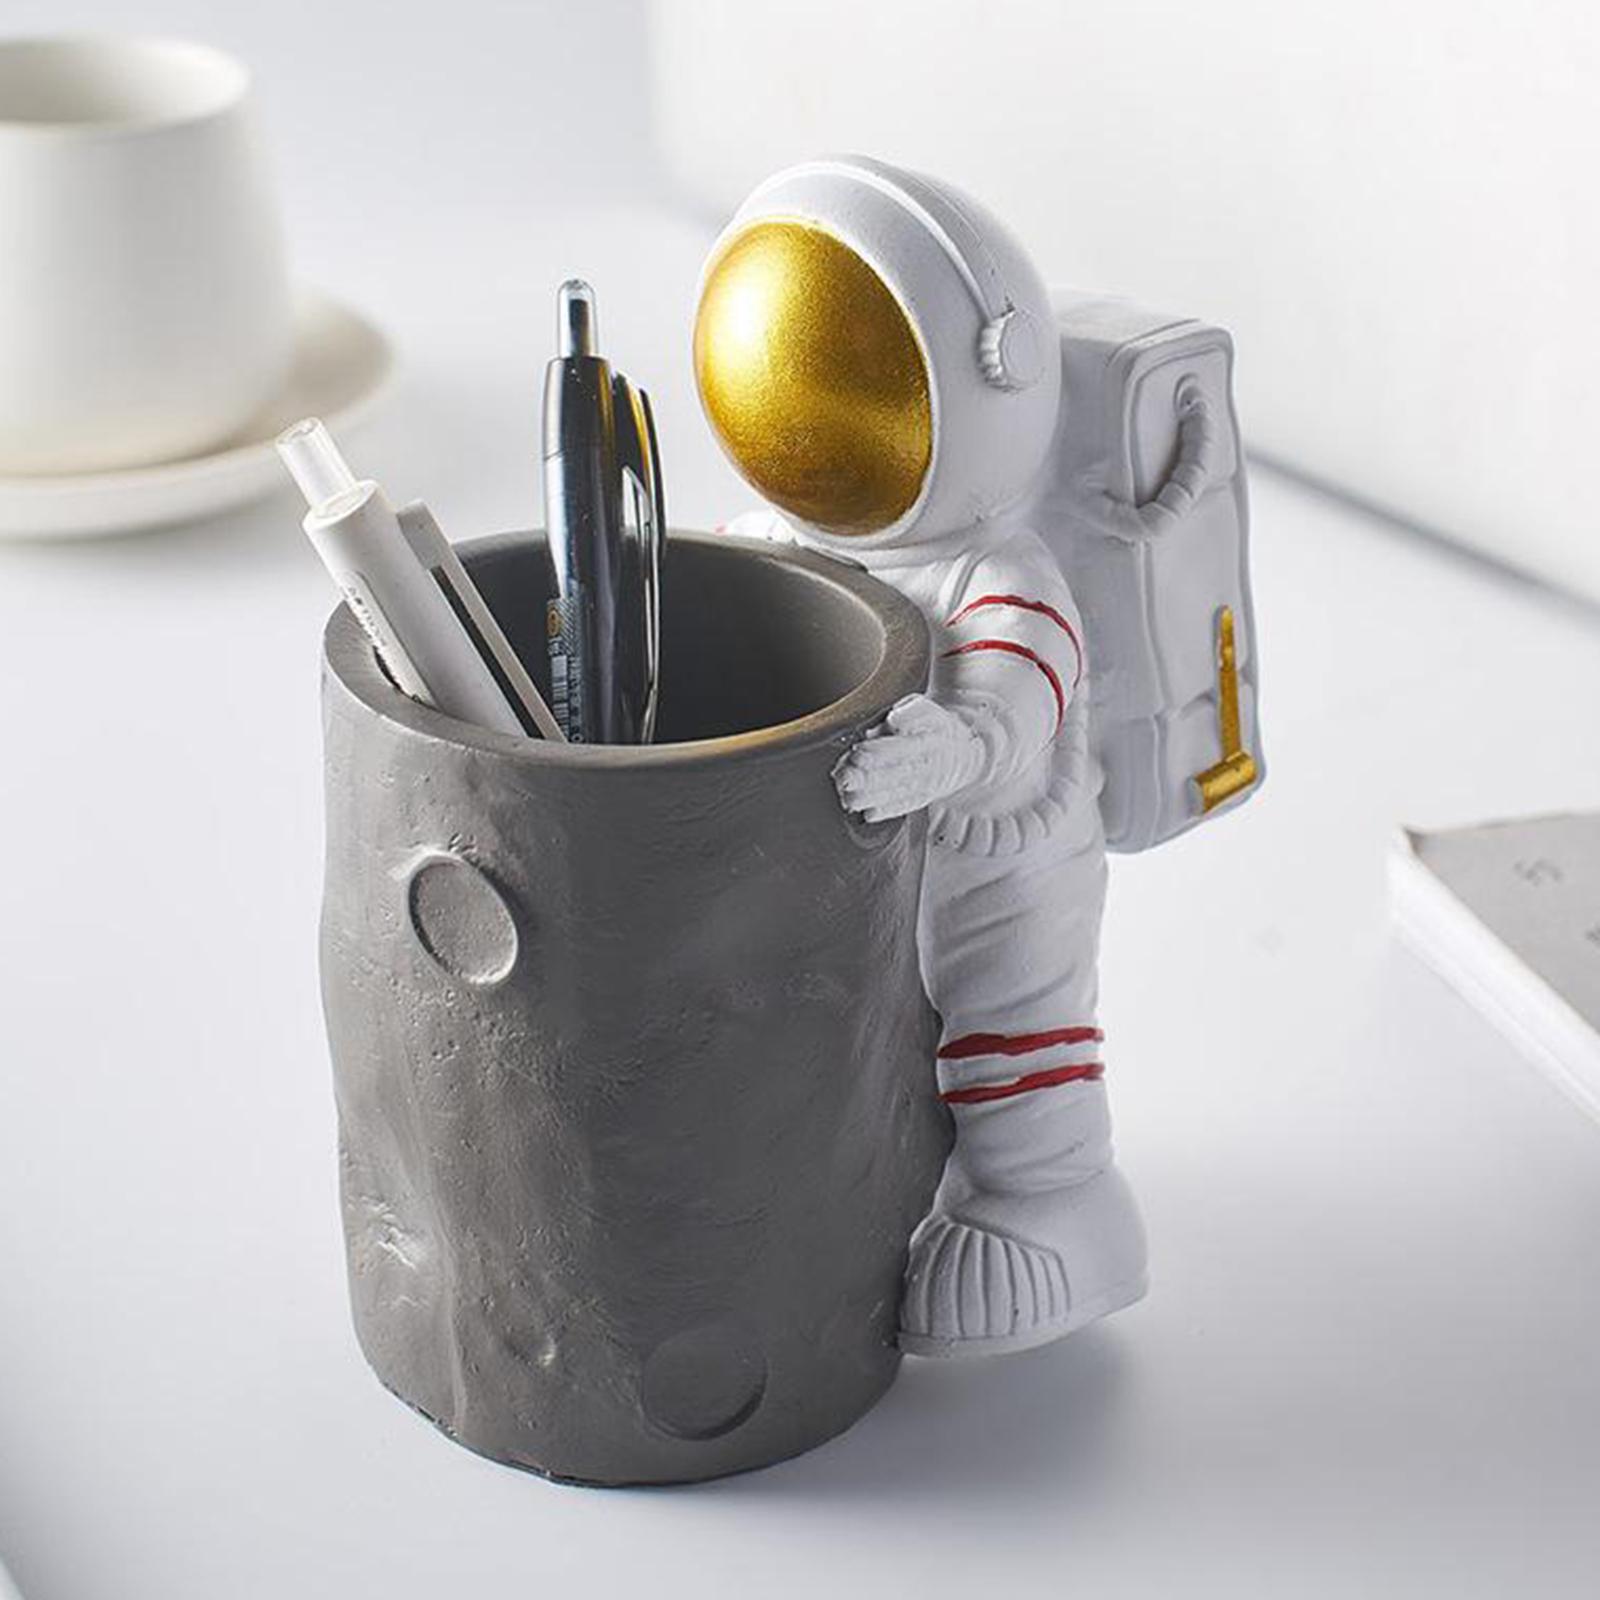 Resin Astronaut Statues Pen Holder Pencil Cup Desktop Figurine Gift Bucket